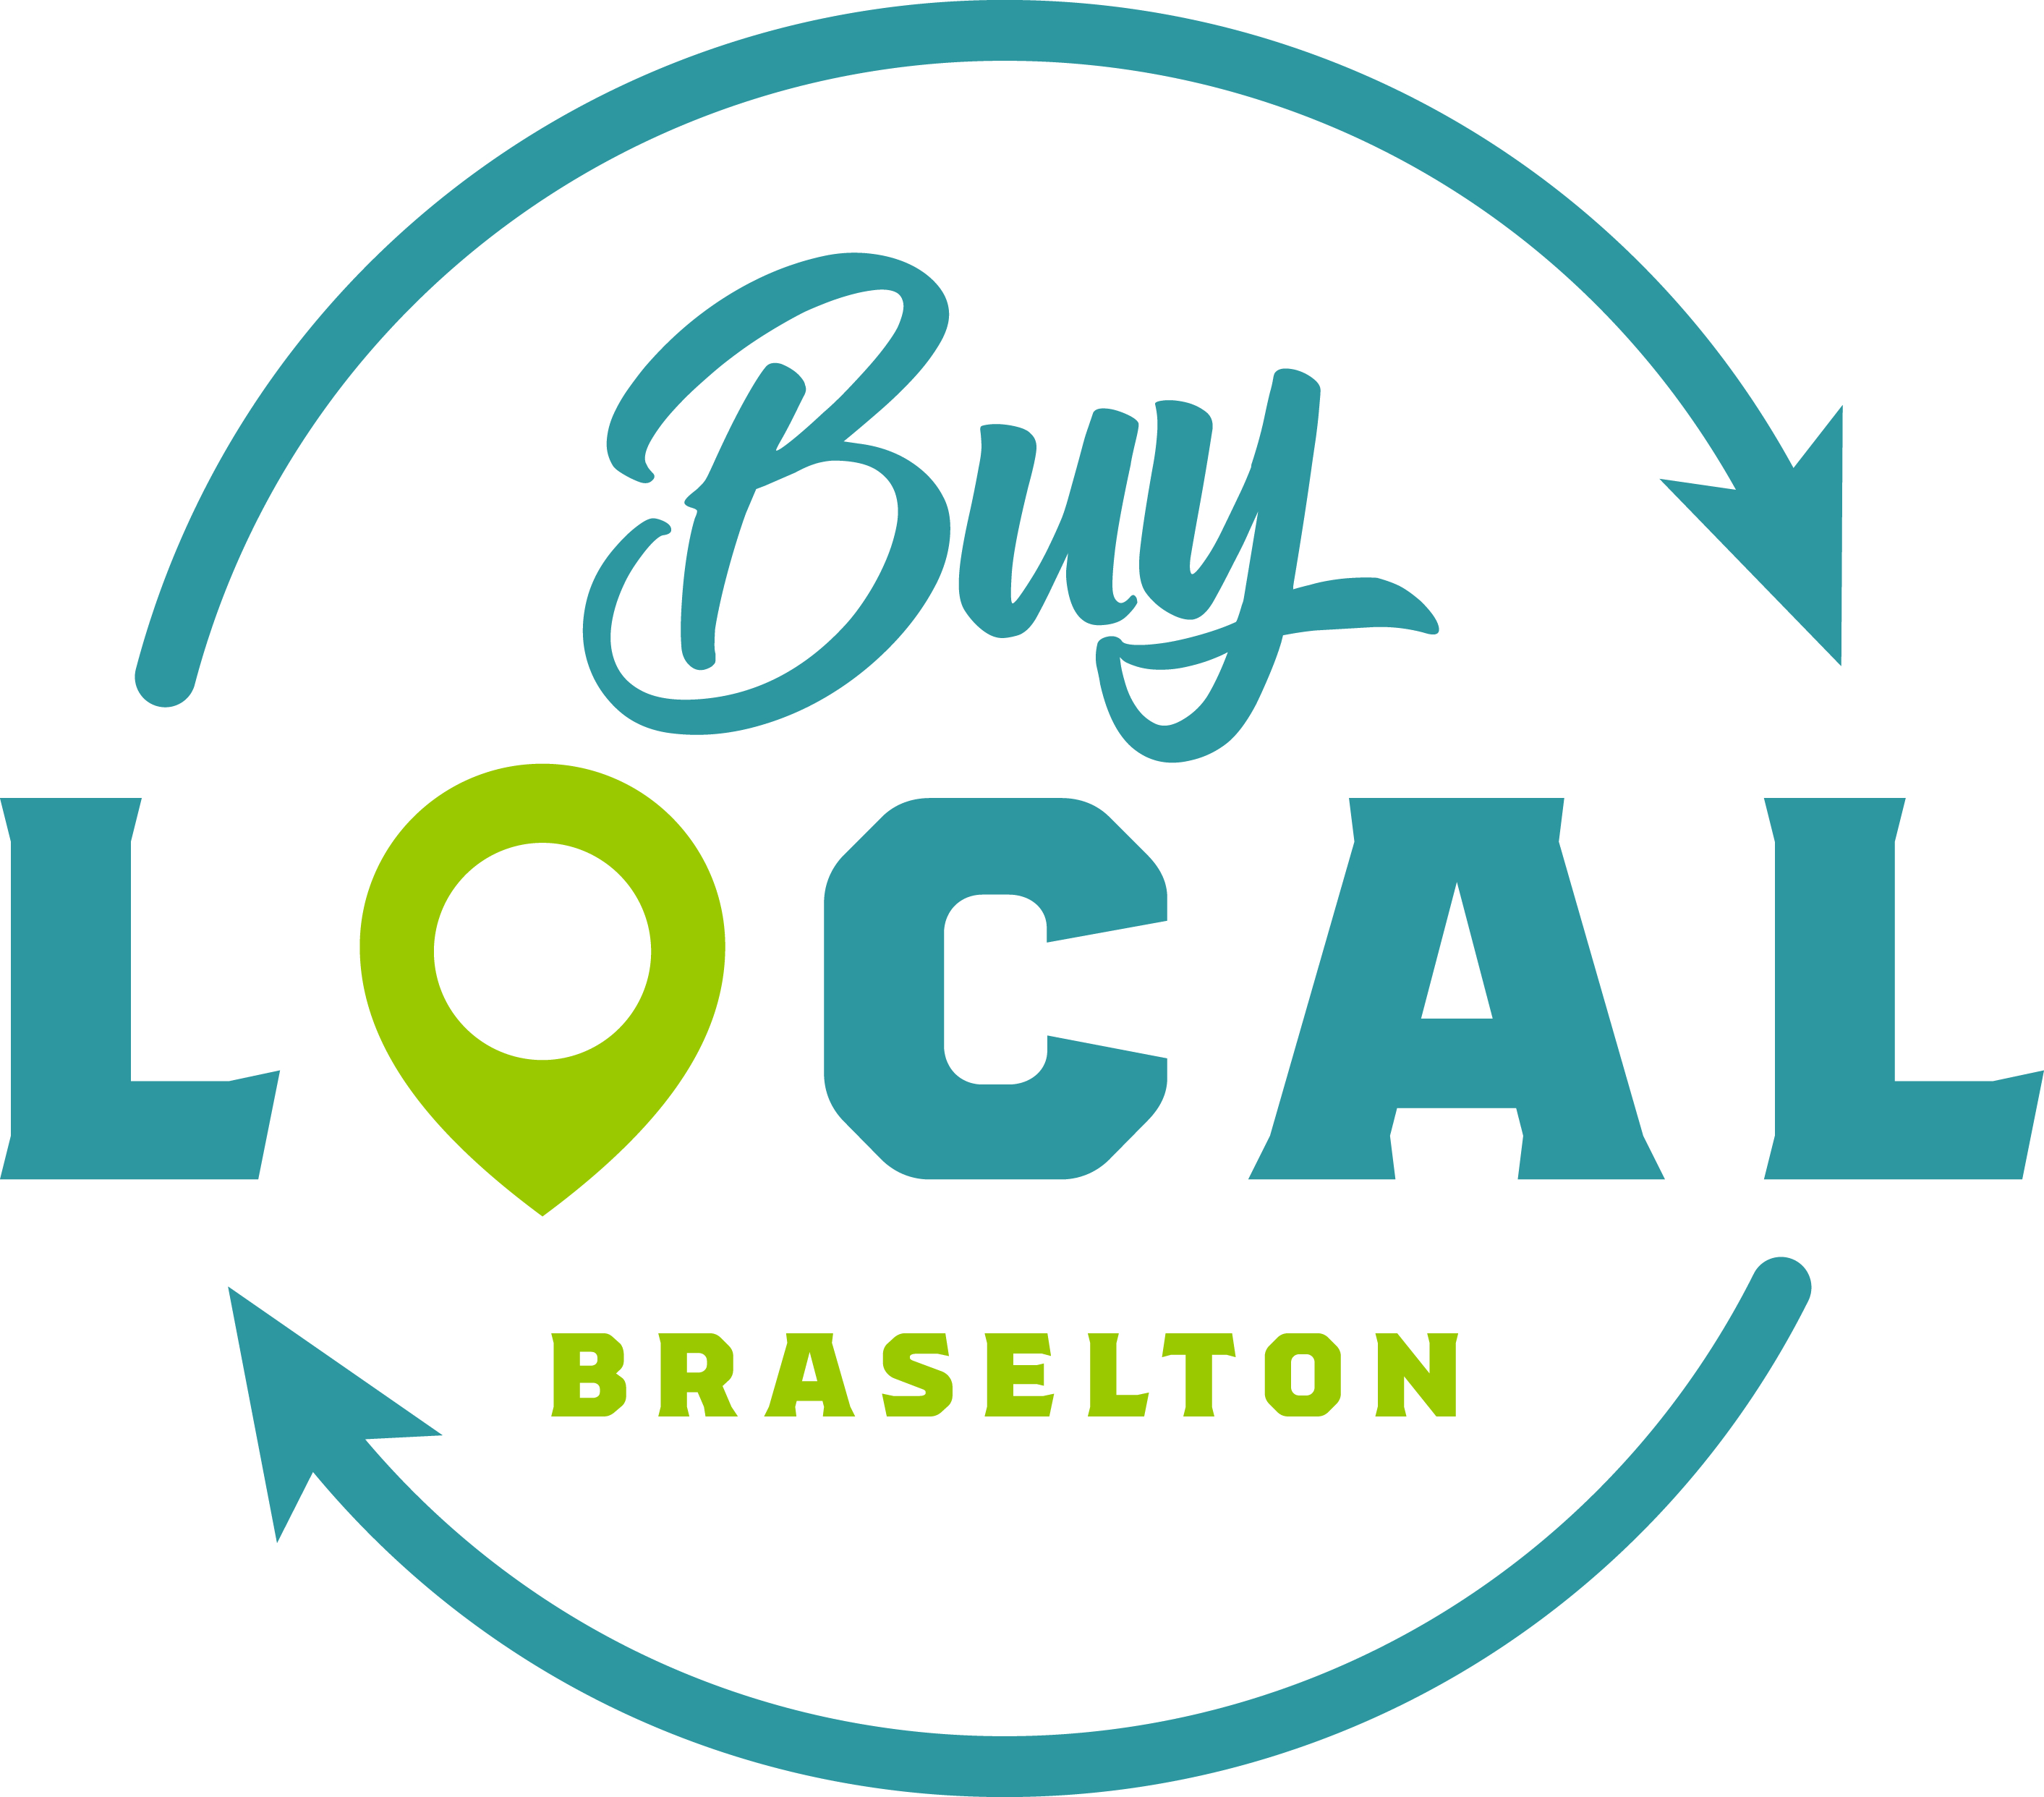 Braselton Buy Local logo